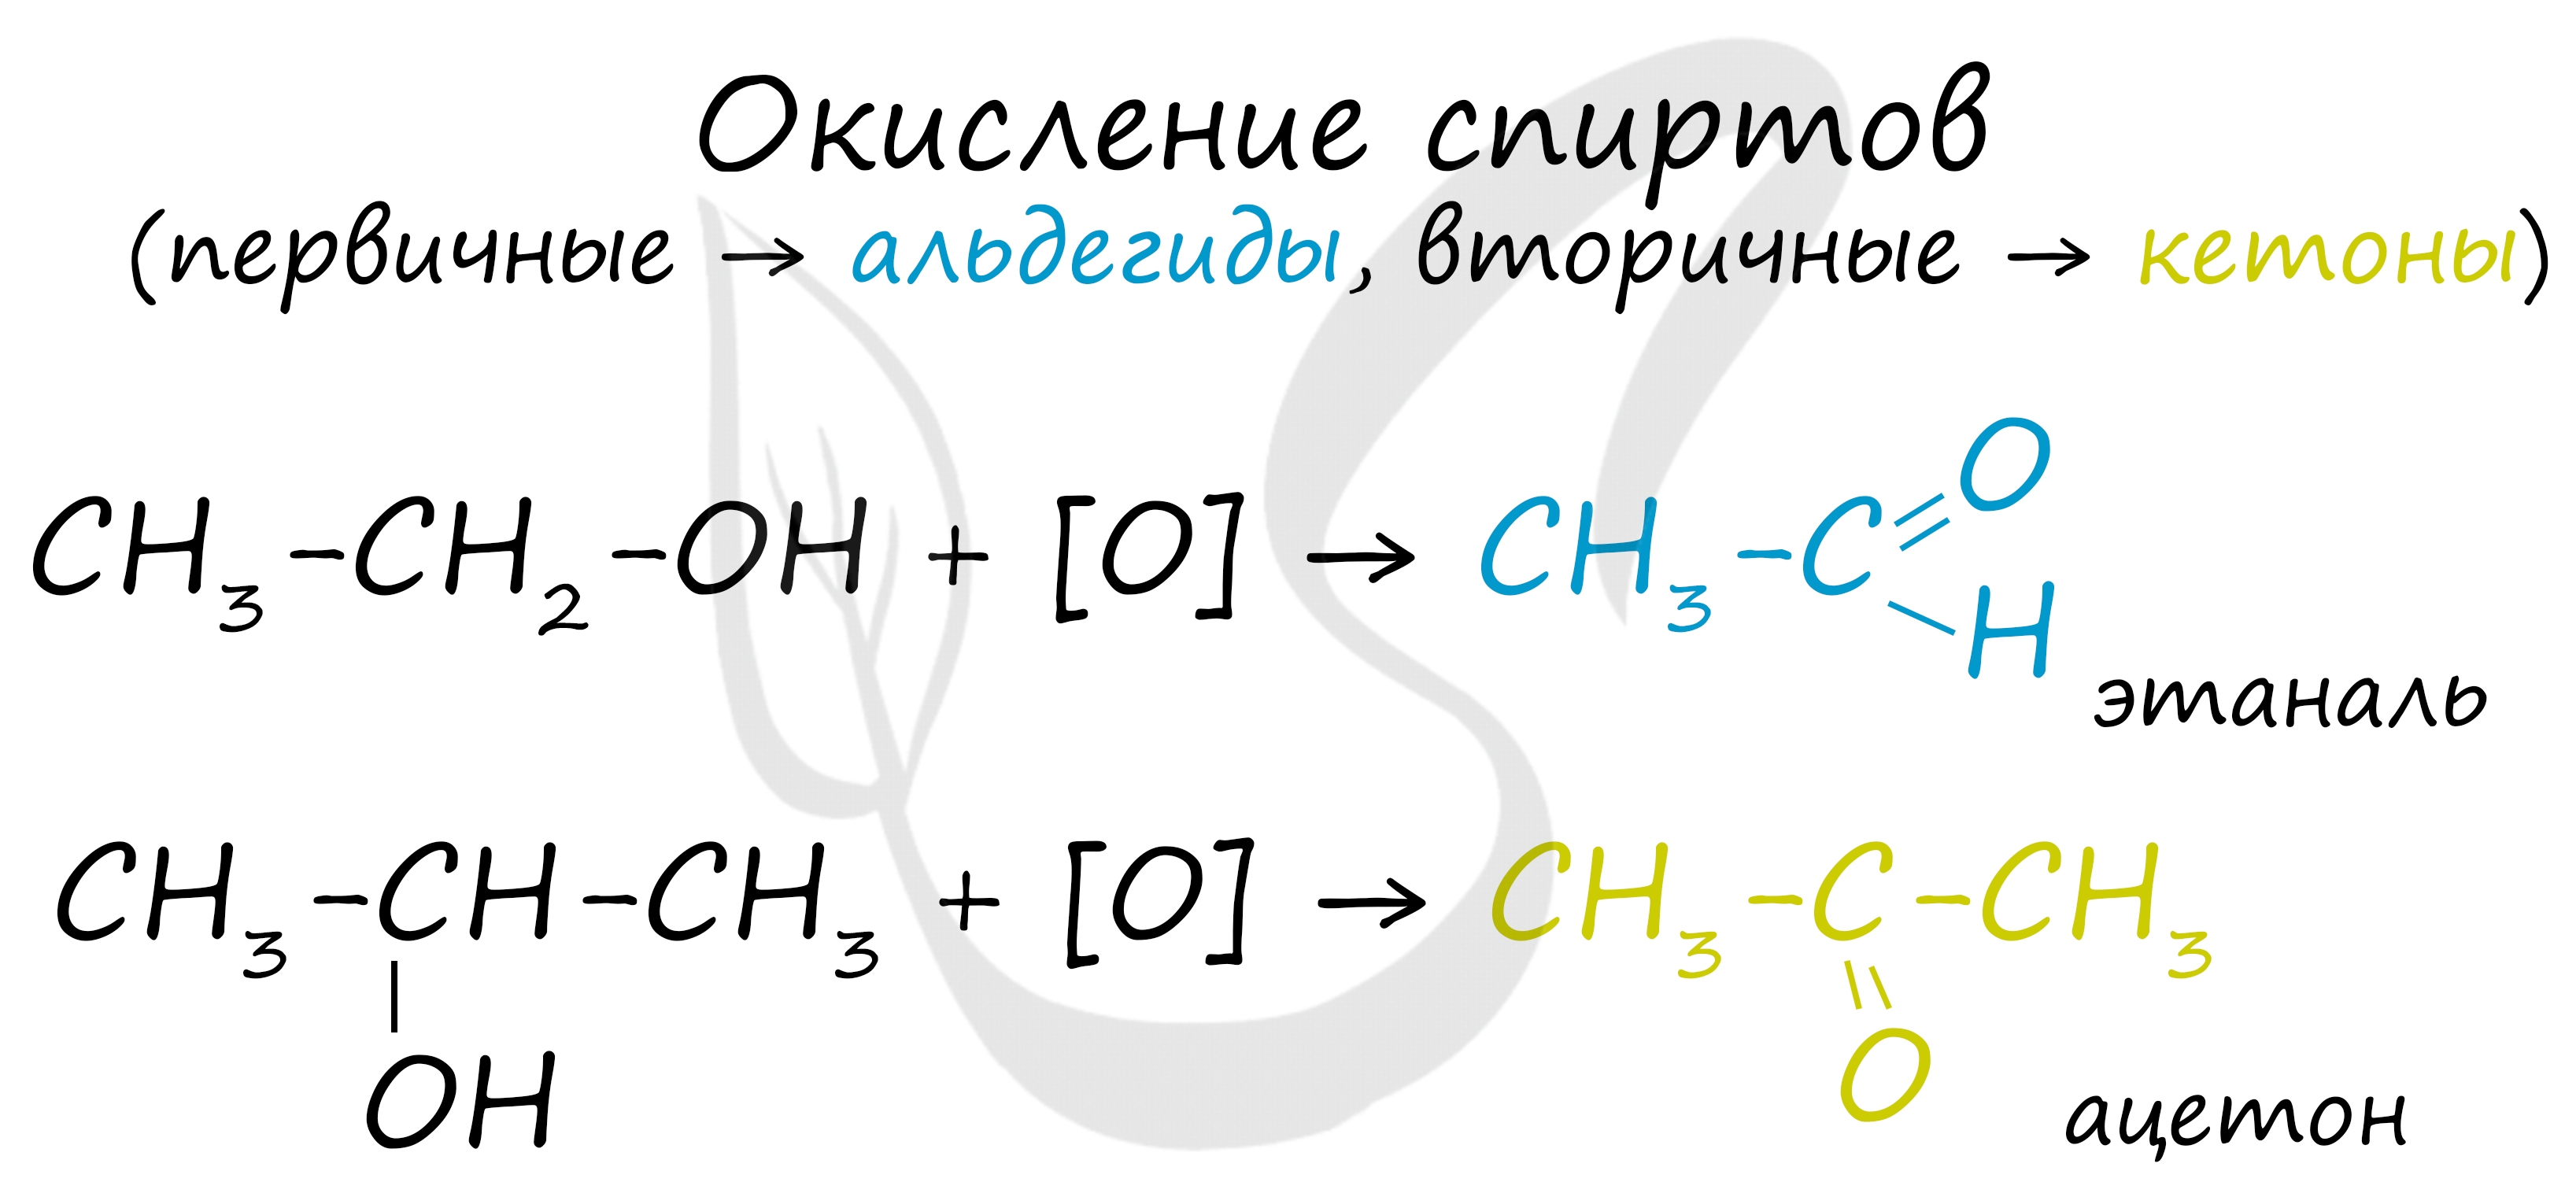 Окисление этаналя гидроксидом меди. Ацетон плюс гидроксид меди 2. Диметилкетон гидроксид меди. Ацетон и гидроксид меди 2 реакция. Ацетон и гидроксид меди 2.